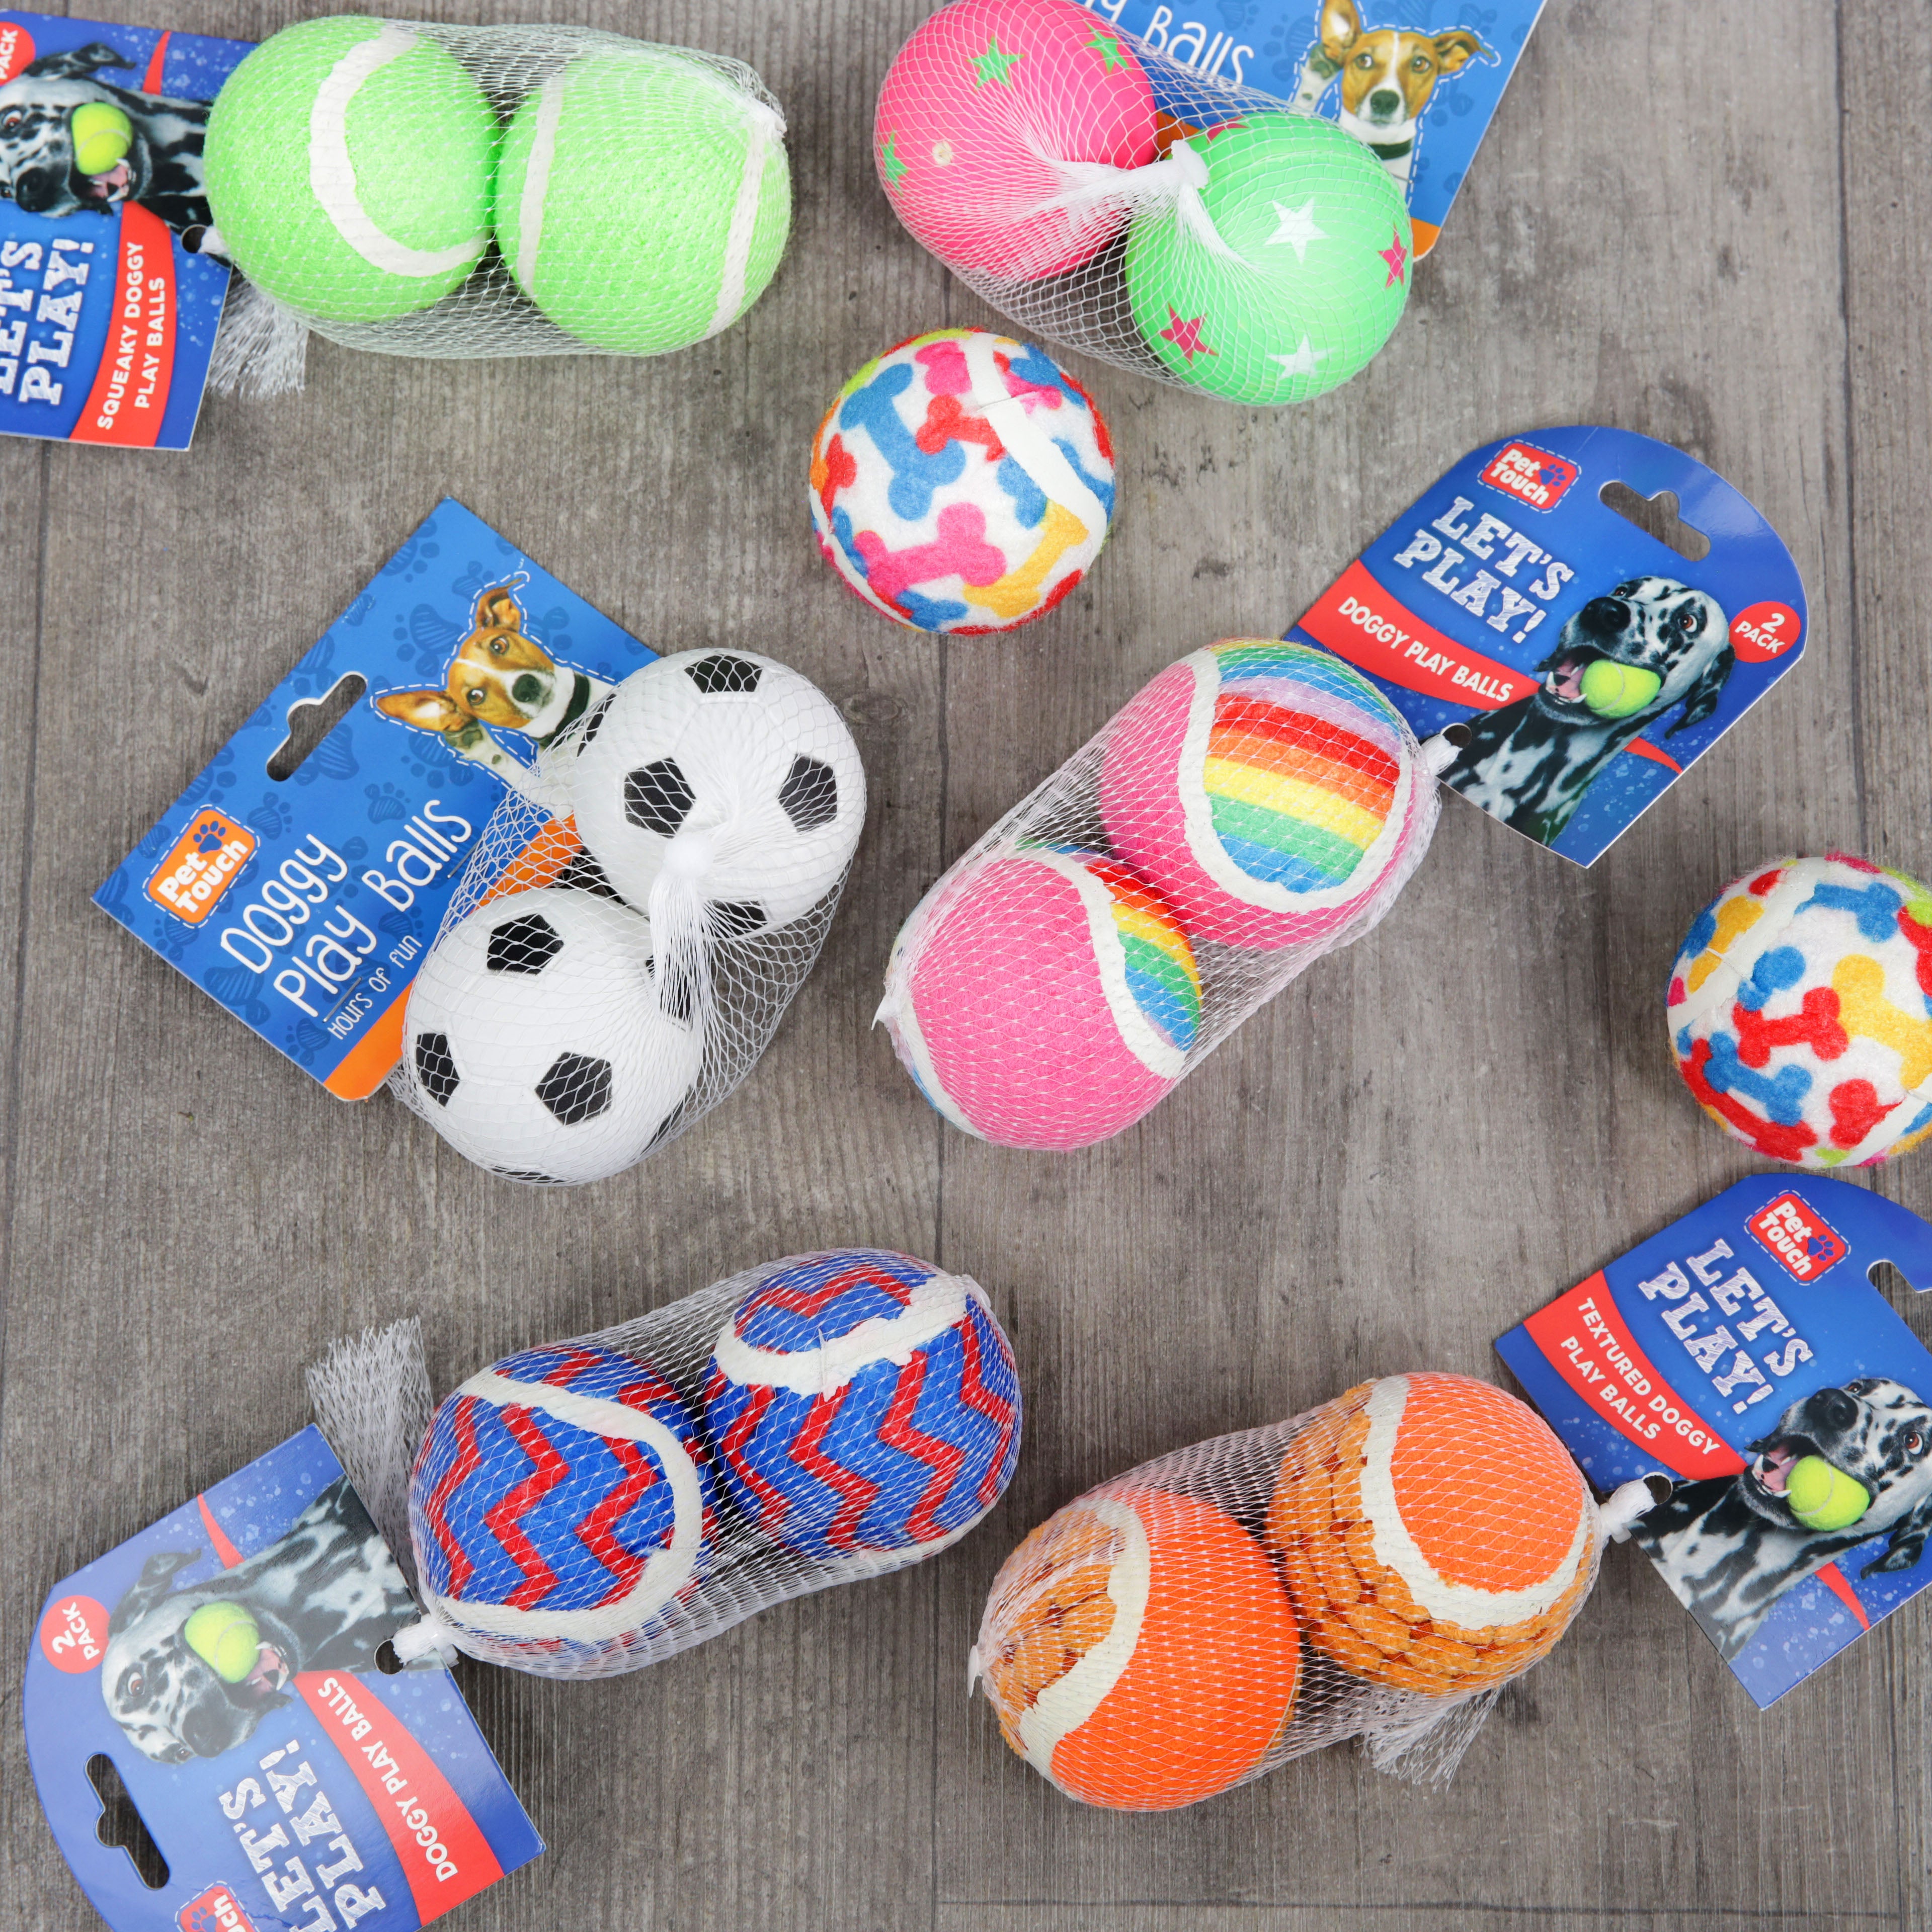 Playtime Dog Toy Balls - Various Designs